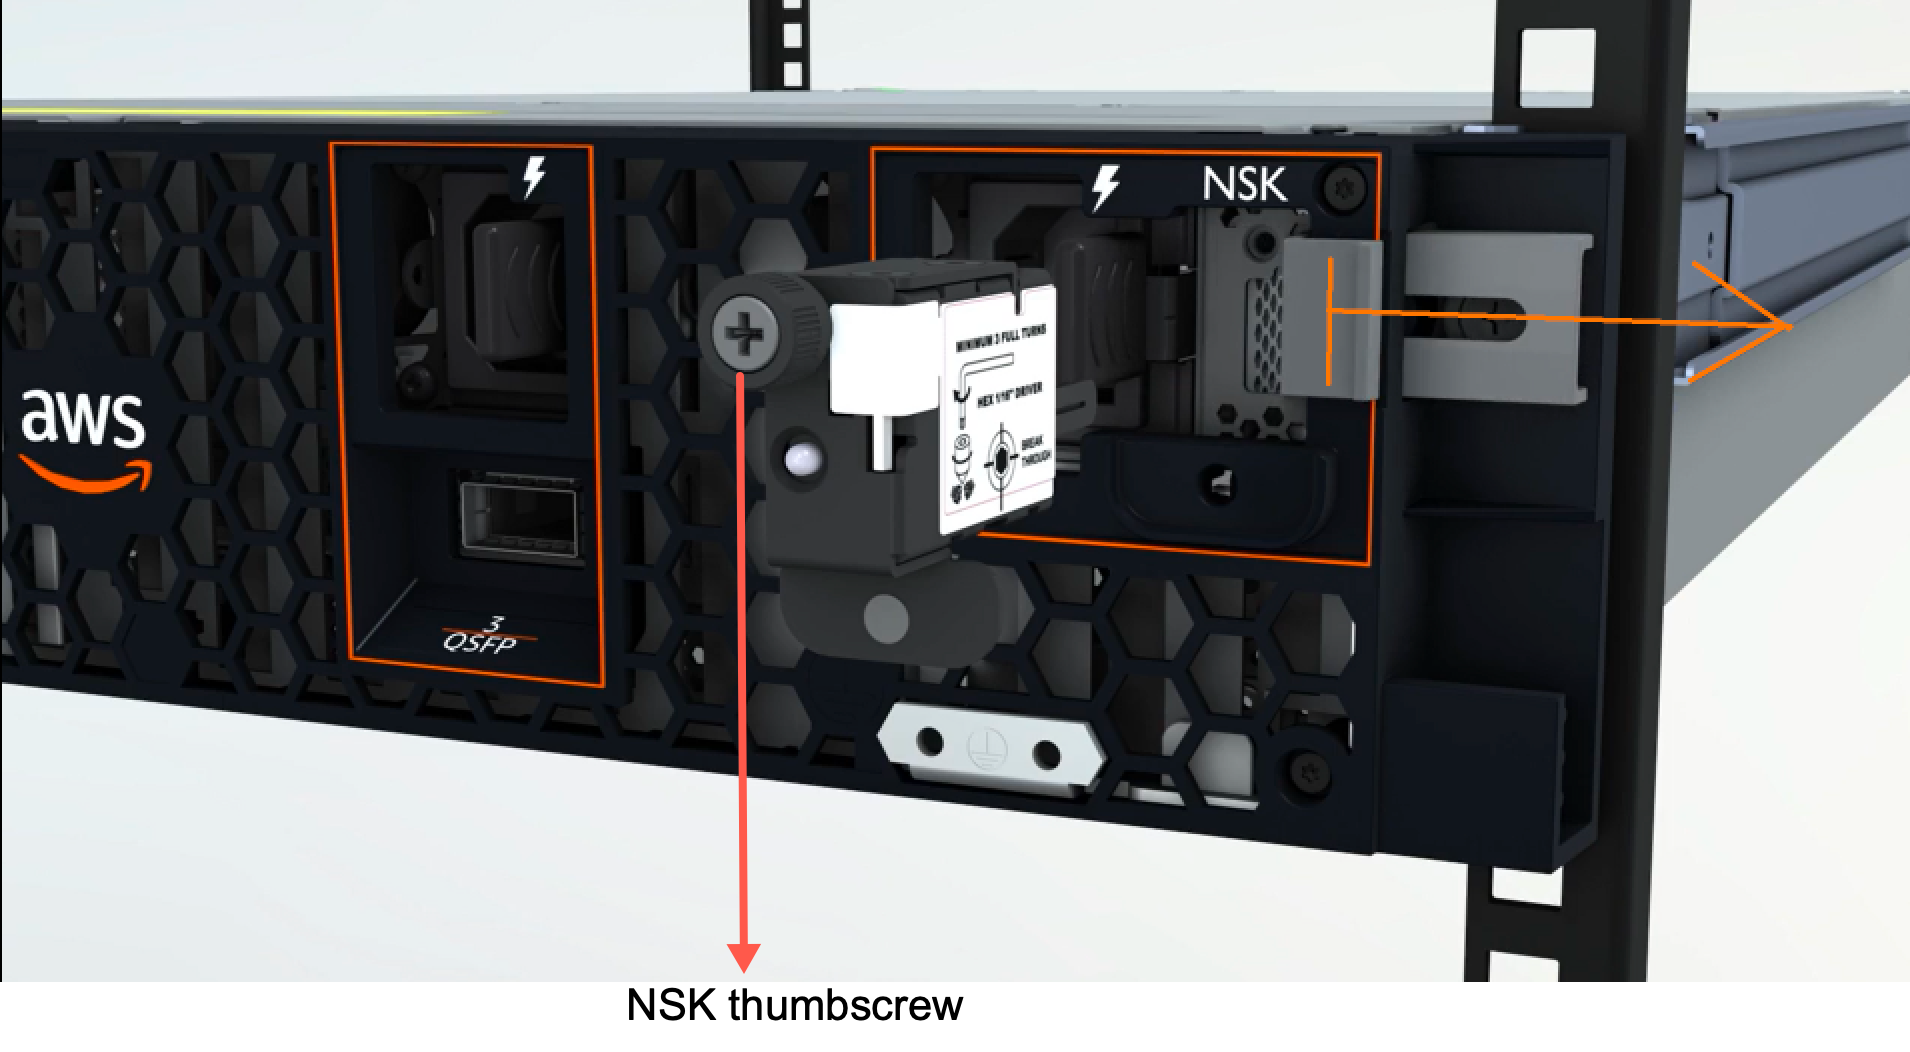 親指ネジの位置を示した NSK の画像。